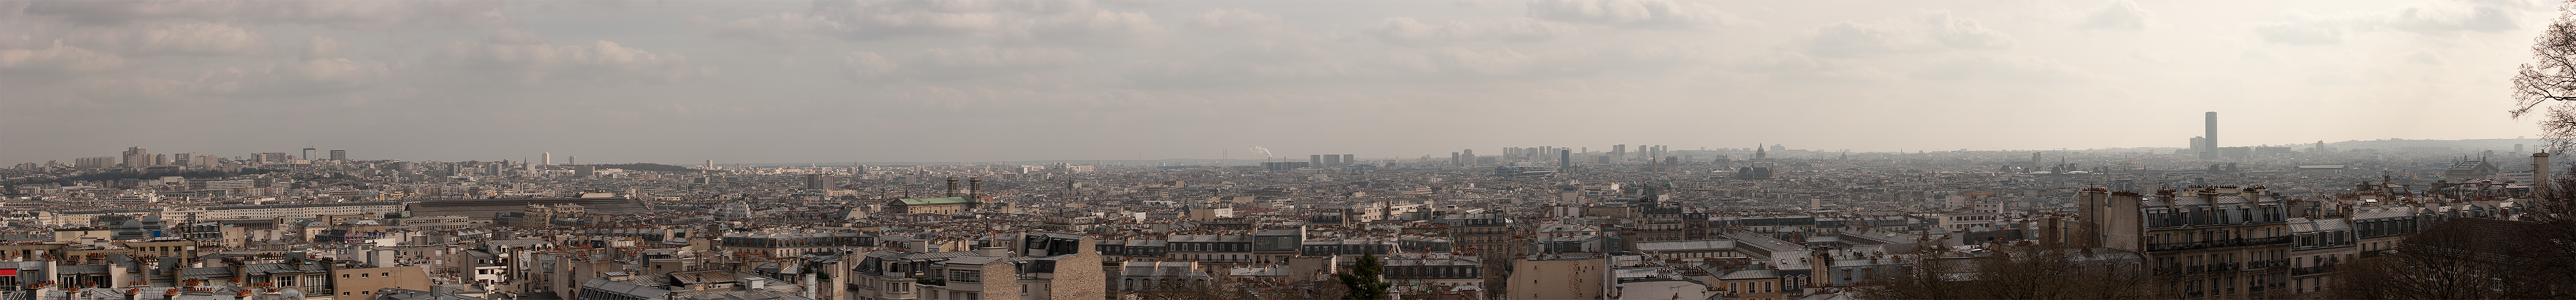 Ein Panoramafoto auf den Stufen von Sacre Coeur in Montmartre aufgenommen. Der Blick über Paris